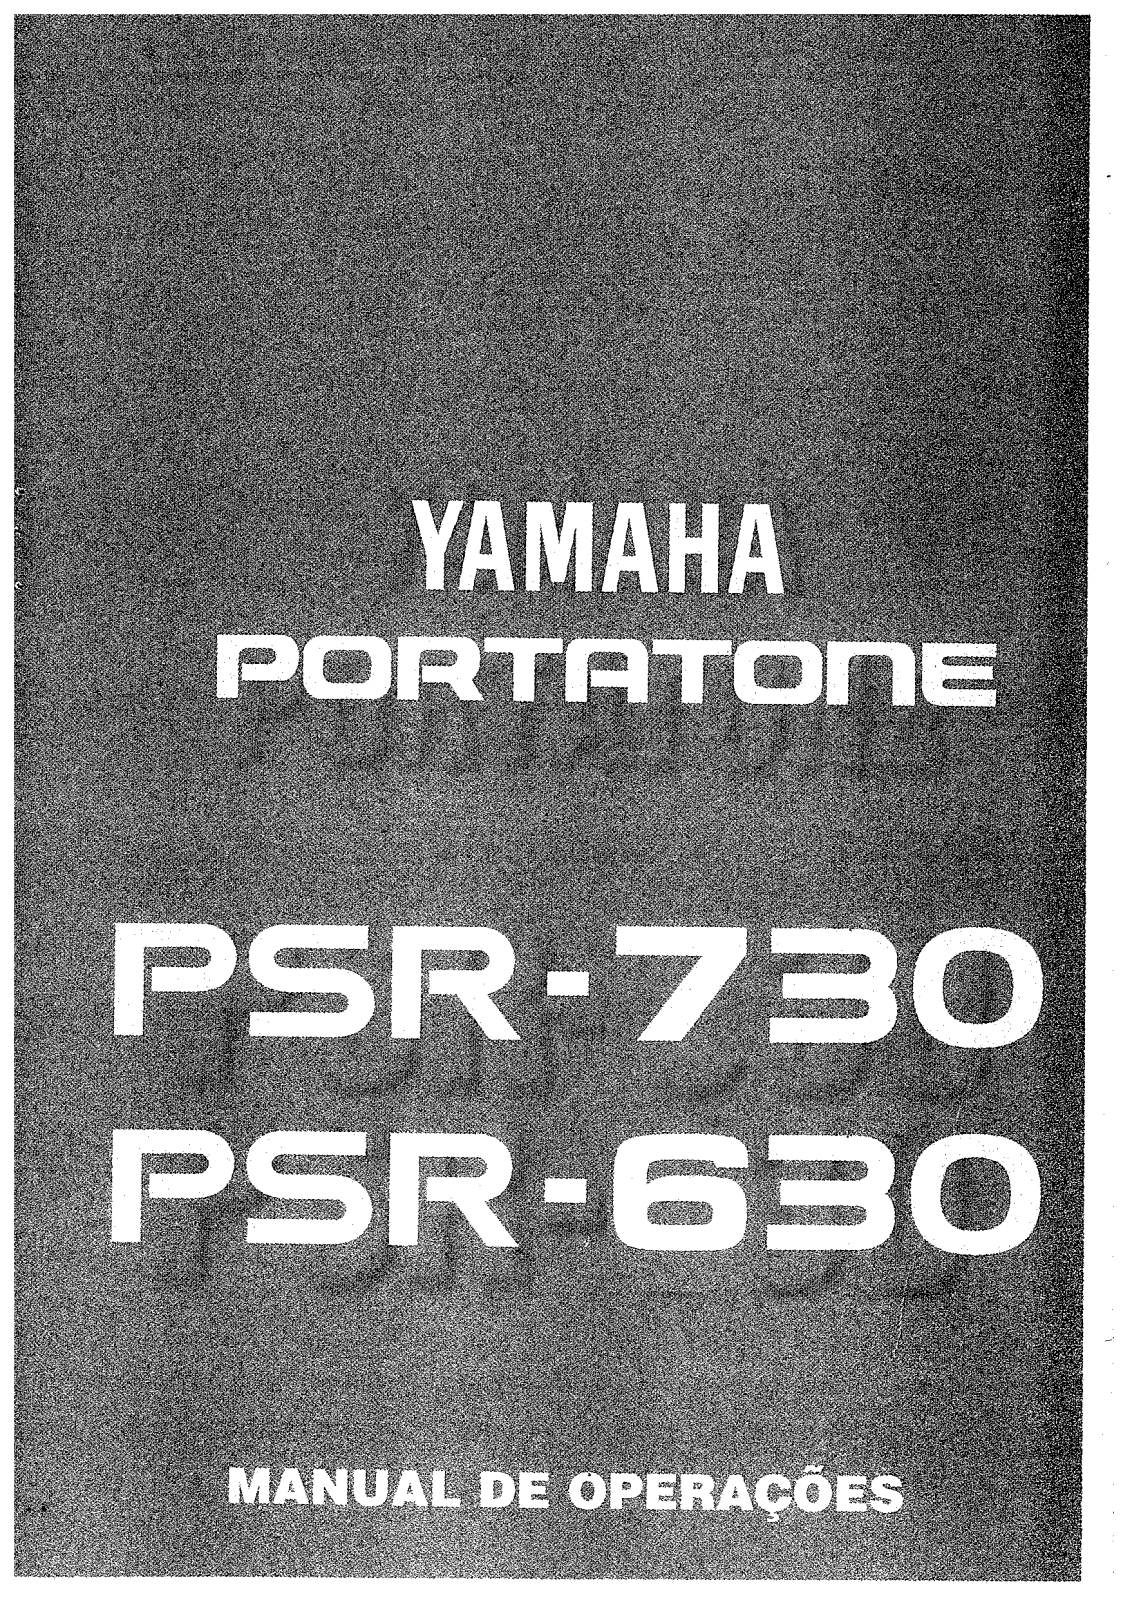 Yamaha PSR-630, PSR-730 Manual